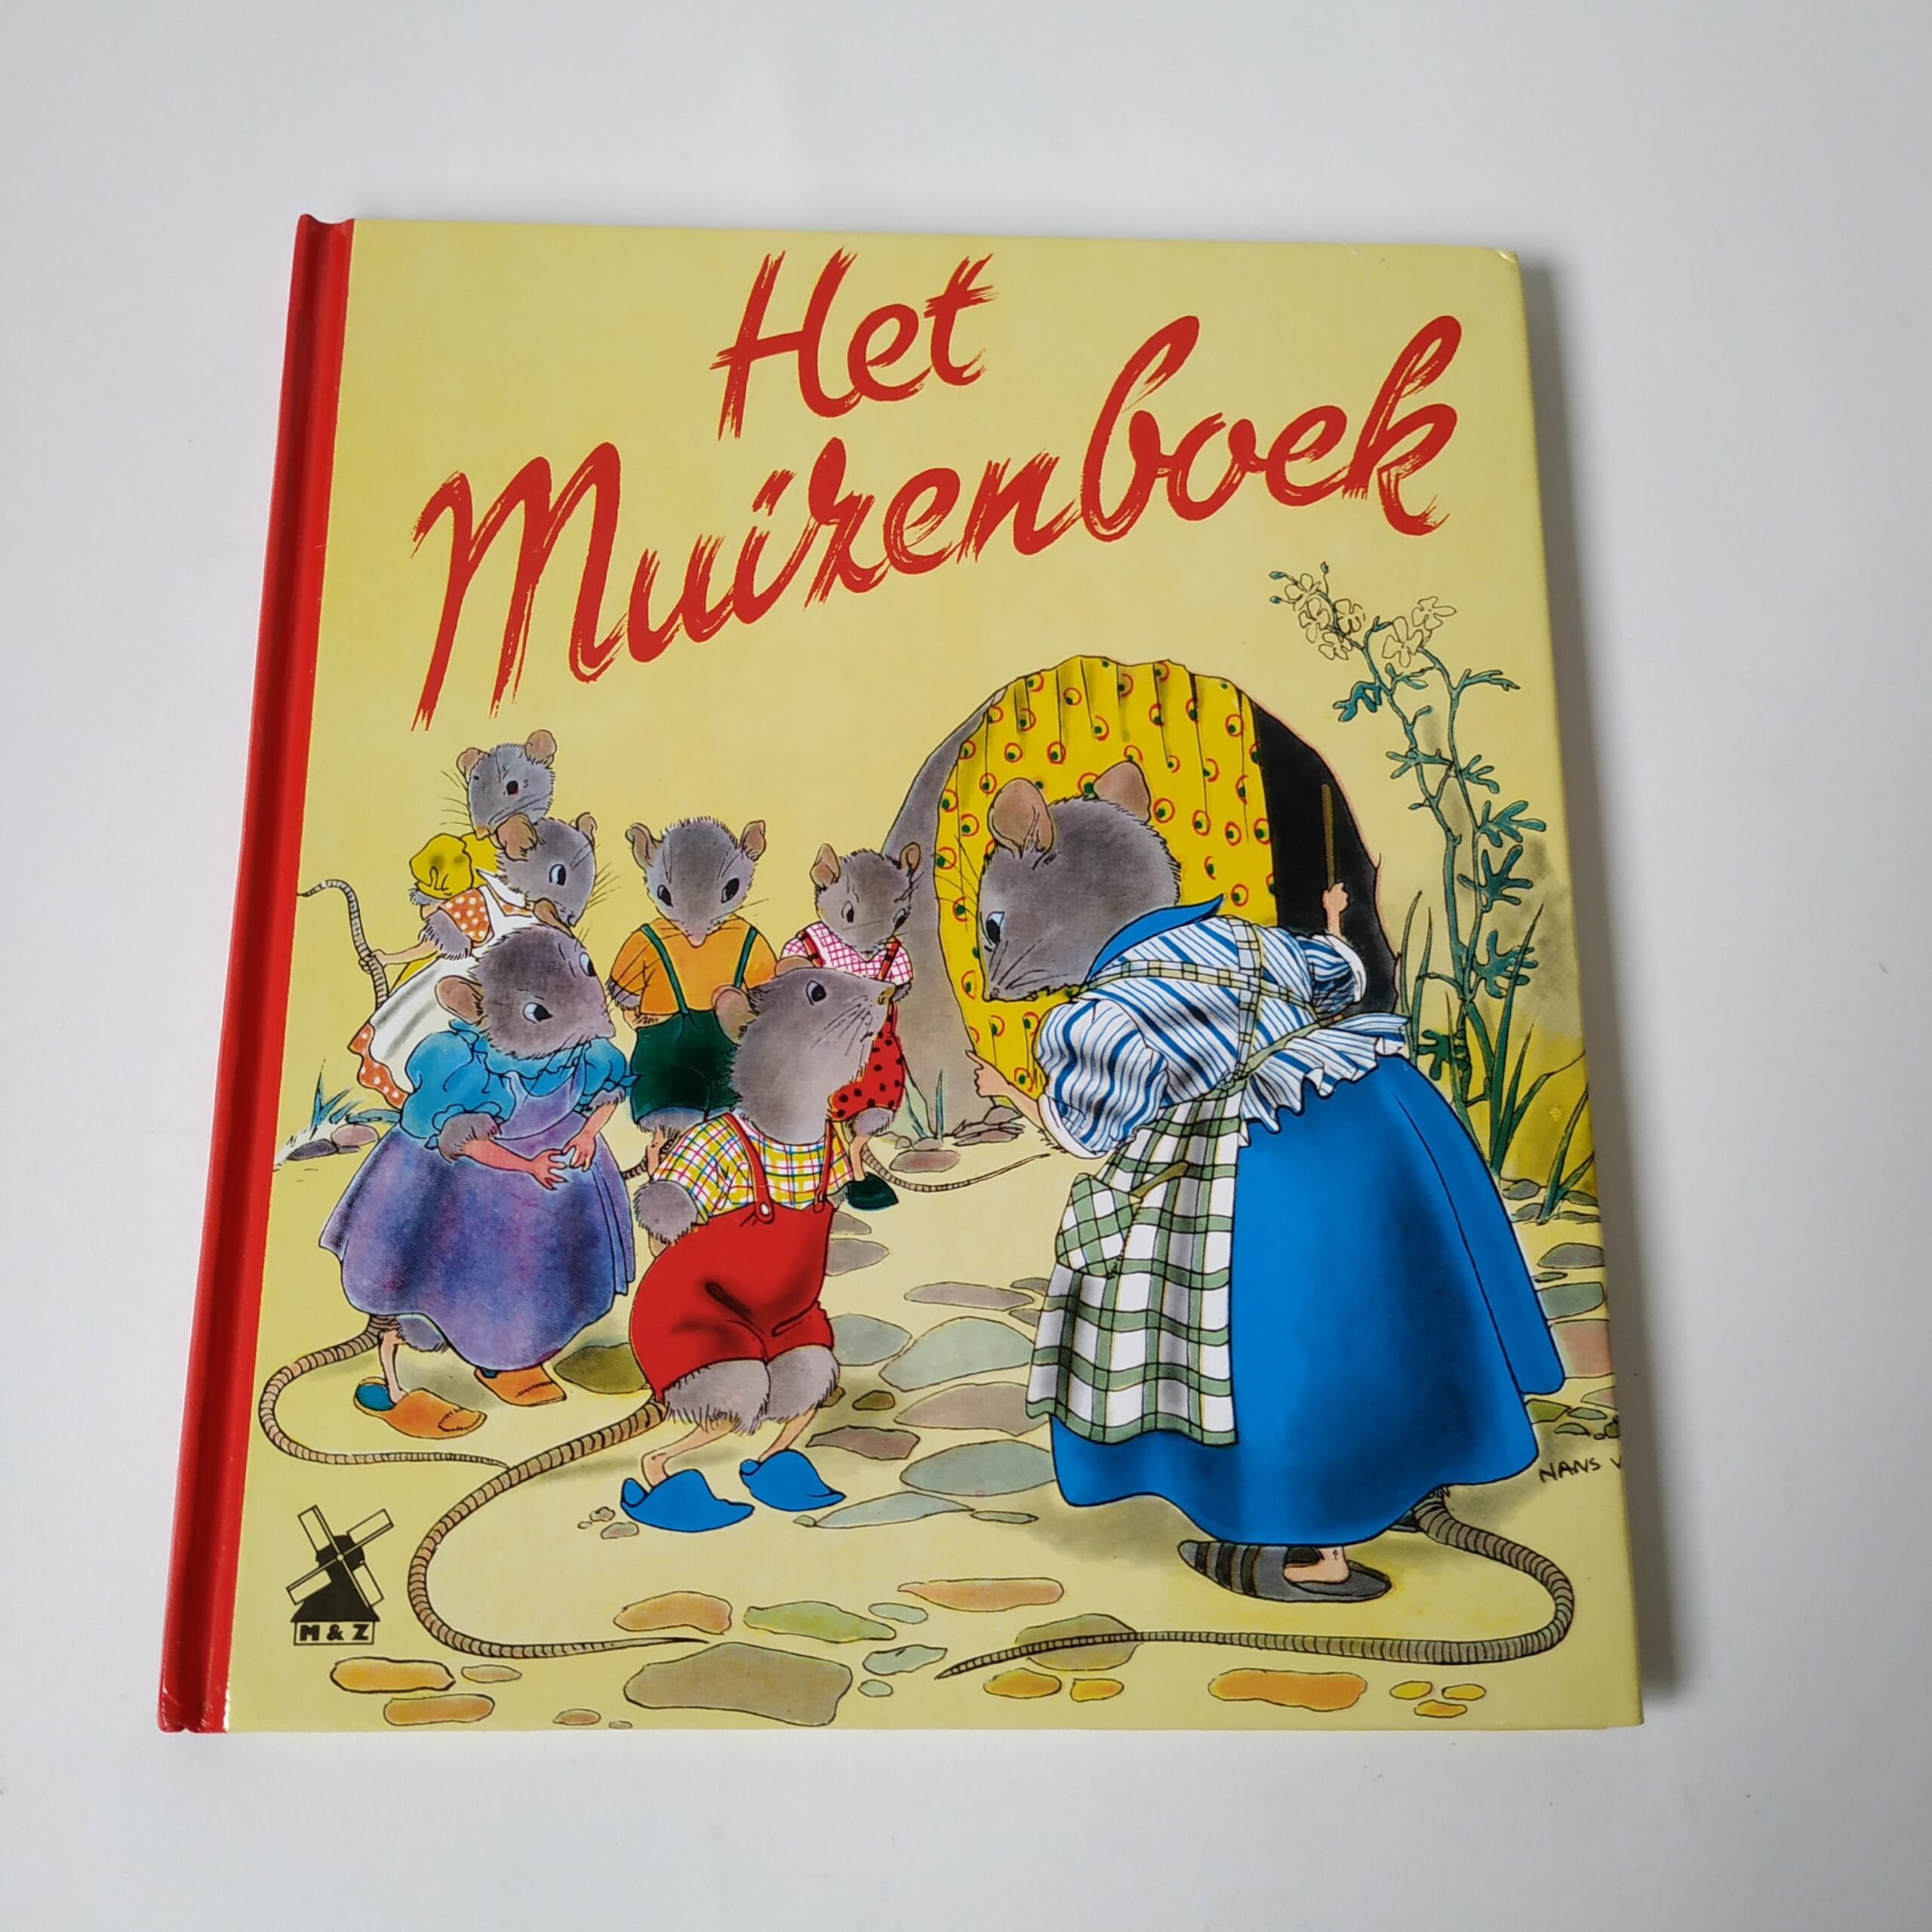 Het Muizenboek op rijm verteld door Clinge Doorenbos (1)